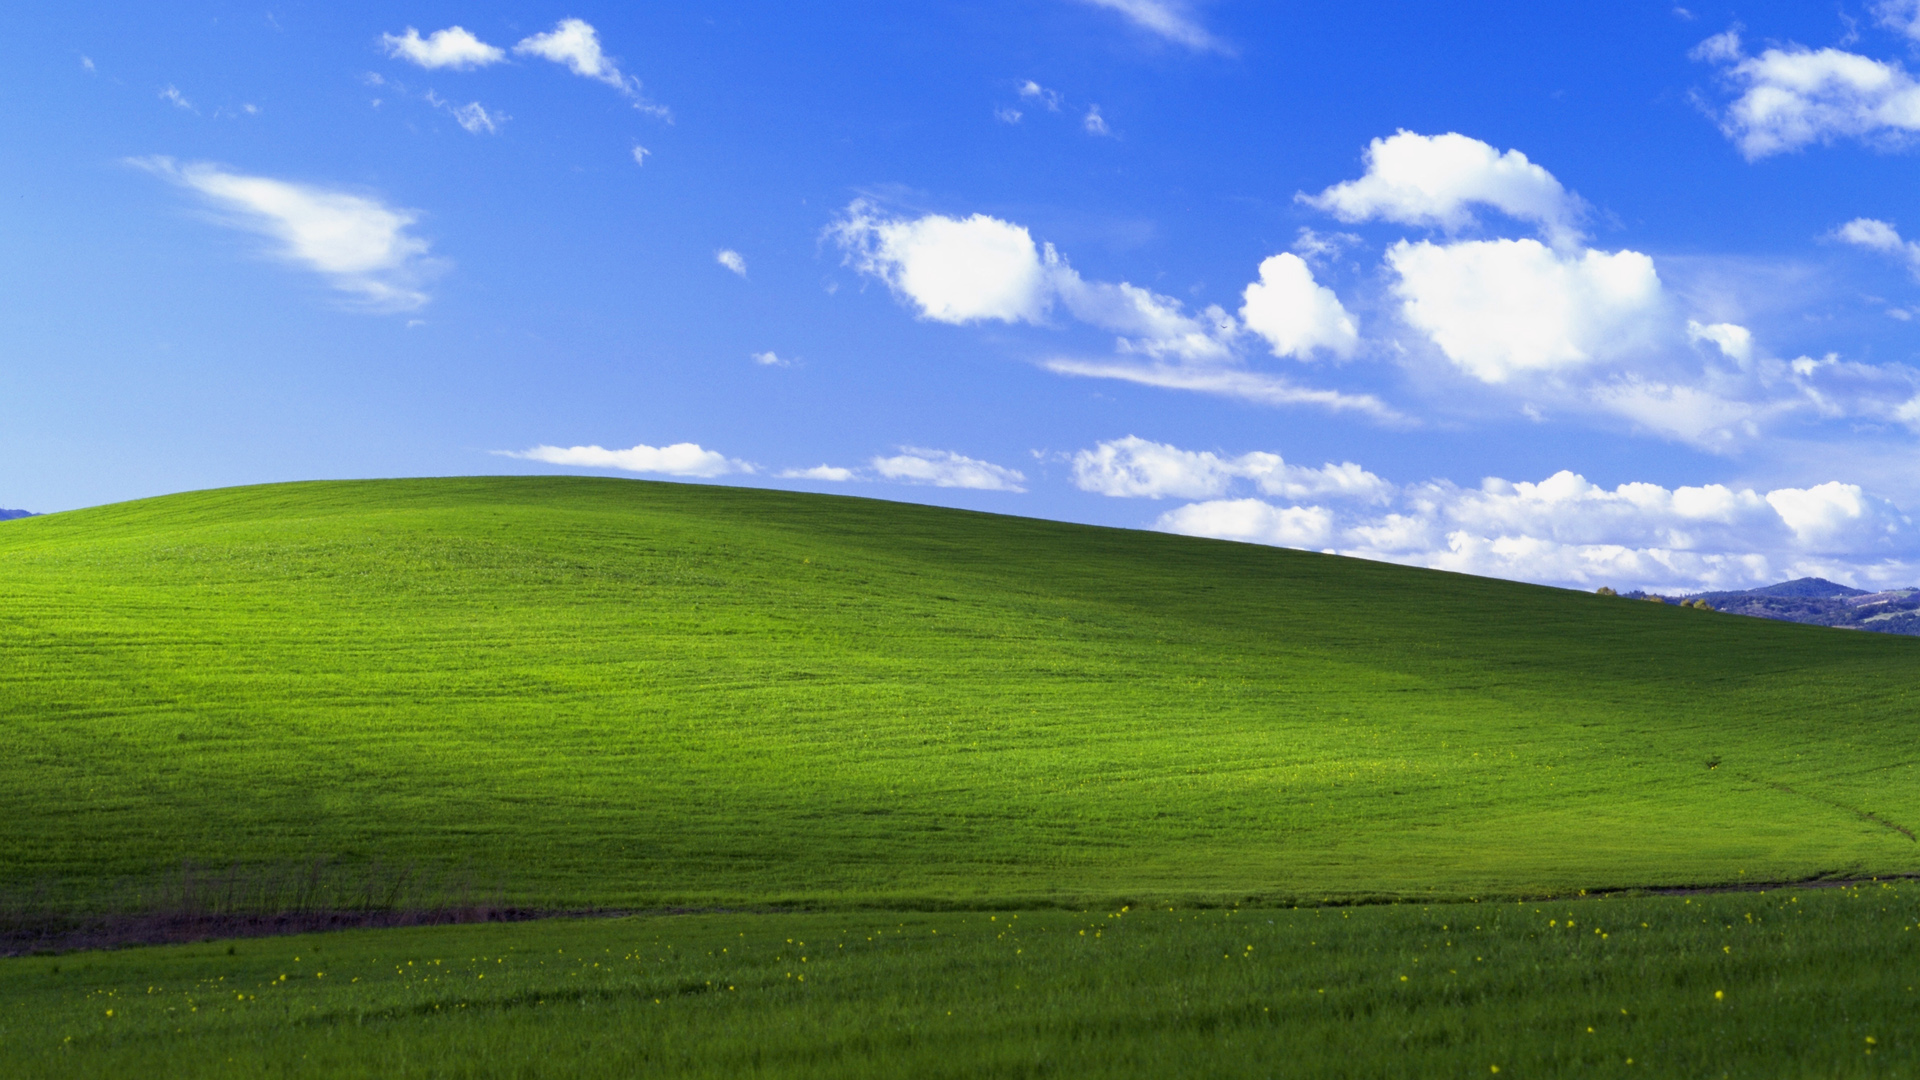 蓝天白云绿草地风景 Windows Xp默认风景经典桌面壁纸 风景壁纸 壁纸下载 彼岸桌面